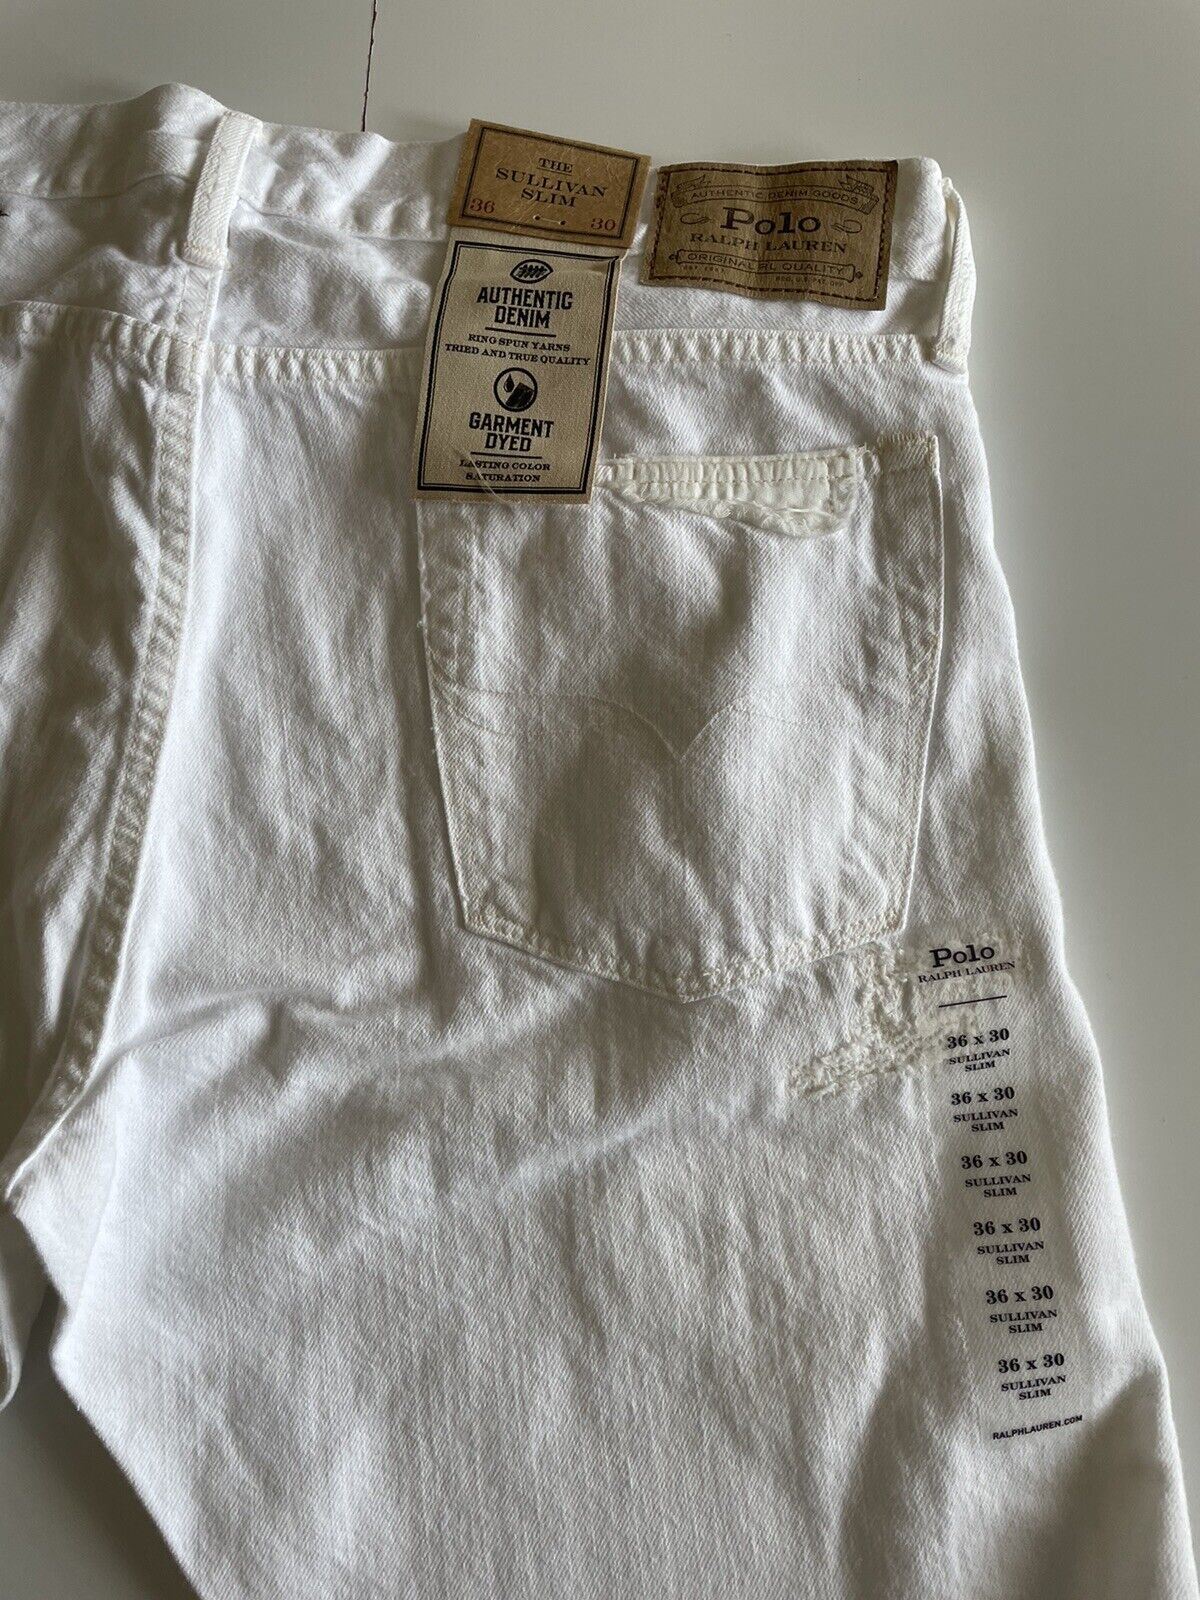 NWT $188 Polo Ralph Lauren Men's The Sullivan Slim White Jeans Size 34x32